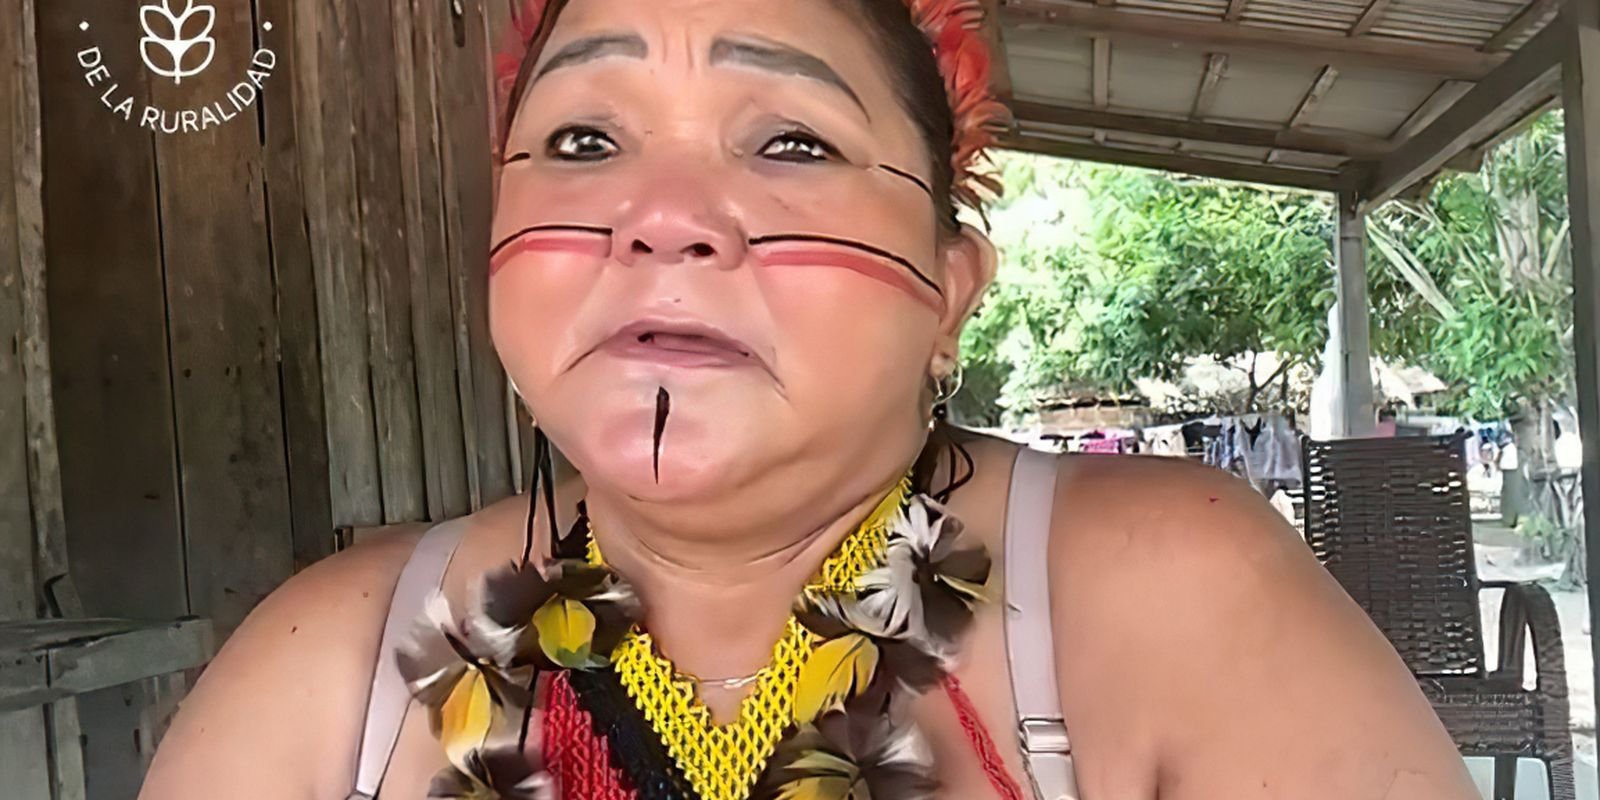 Cacique do Pará recebe prêmio por empreender e conservar na Amazônia